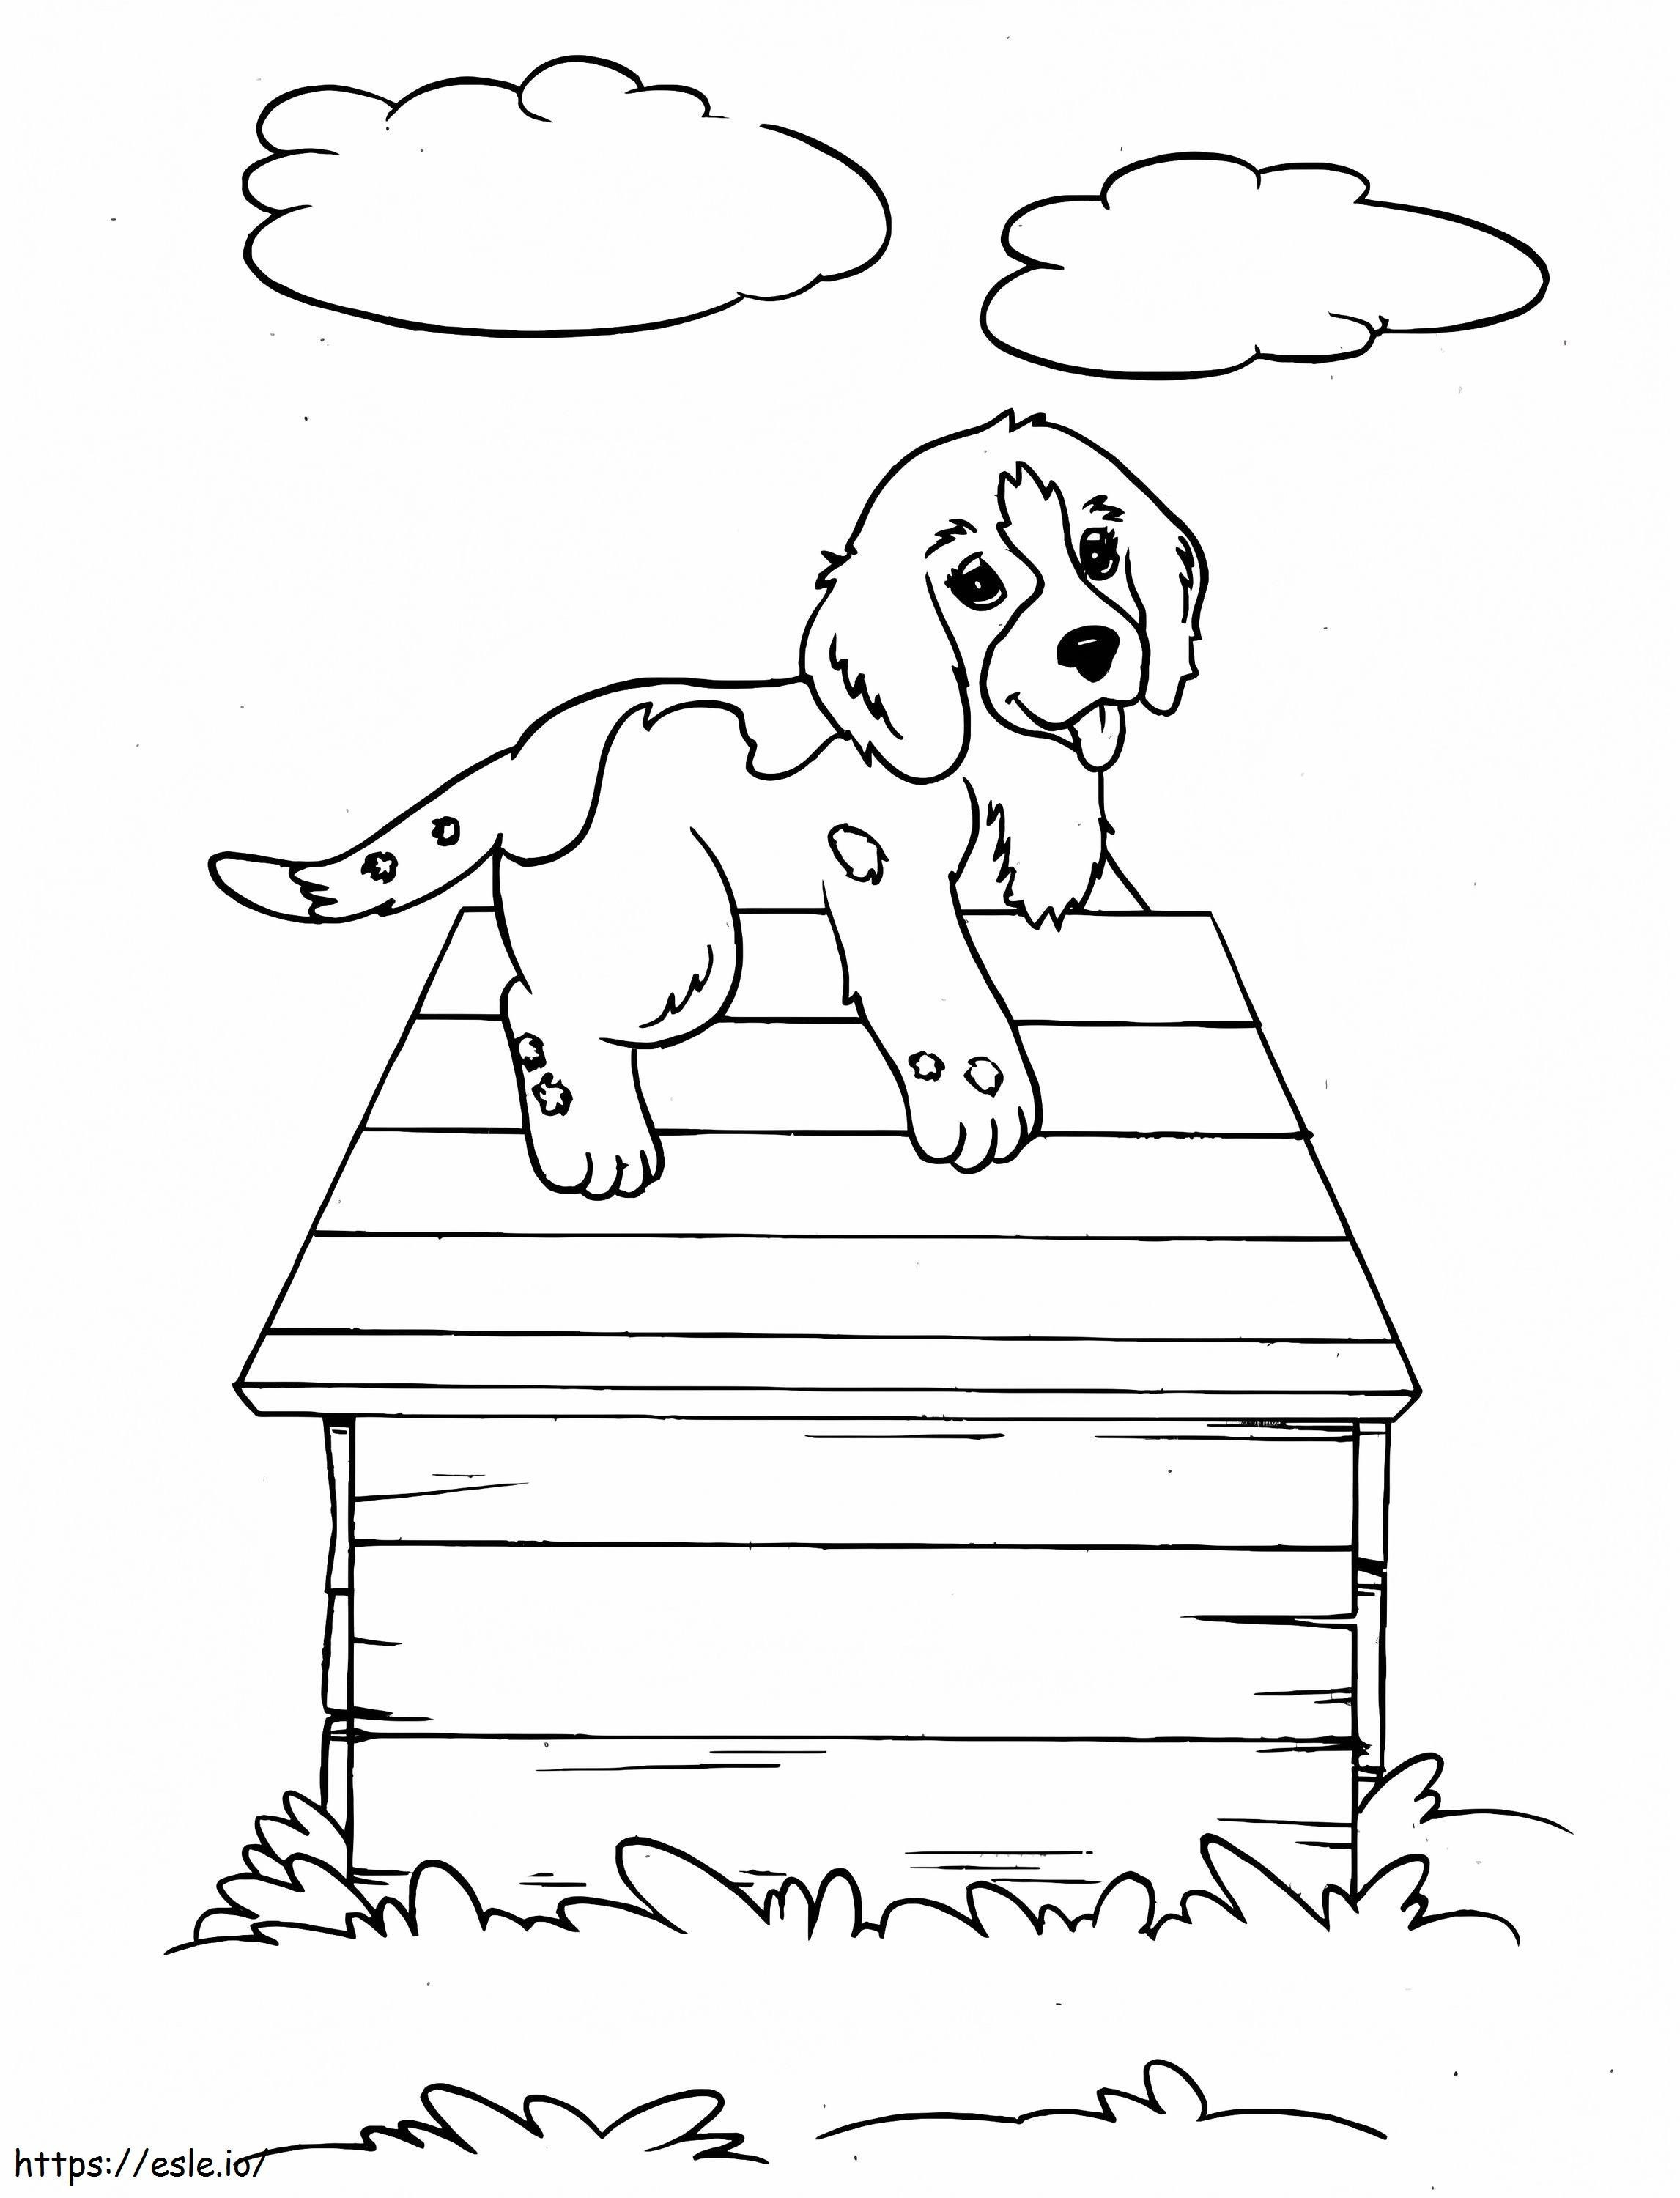 Puppy In Een Huis kleurplaat kleurplaat